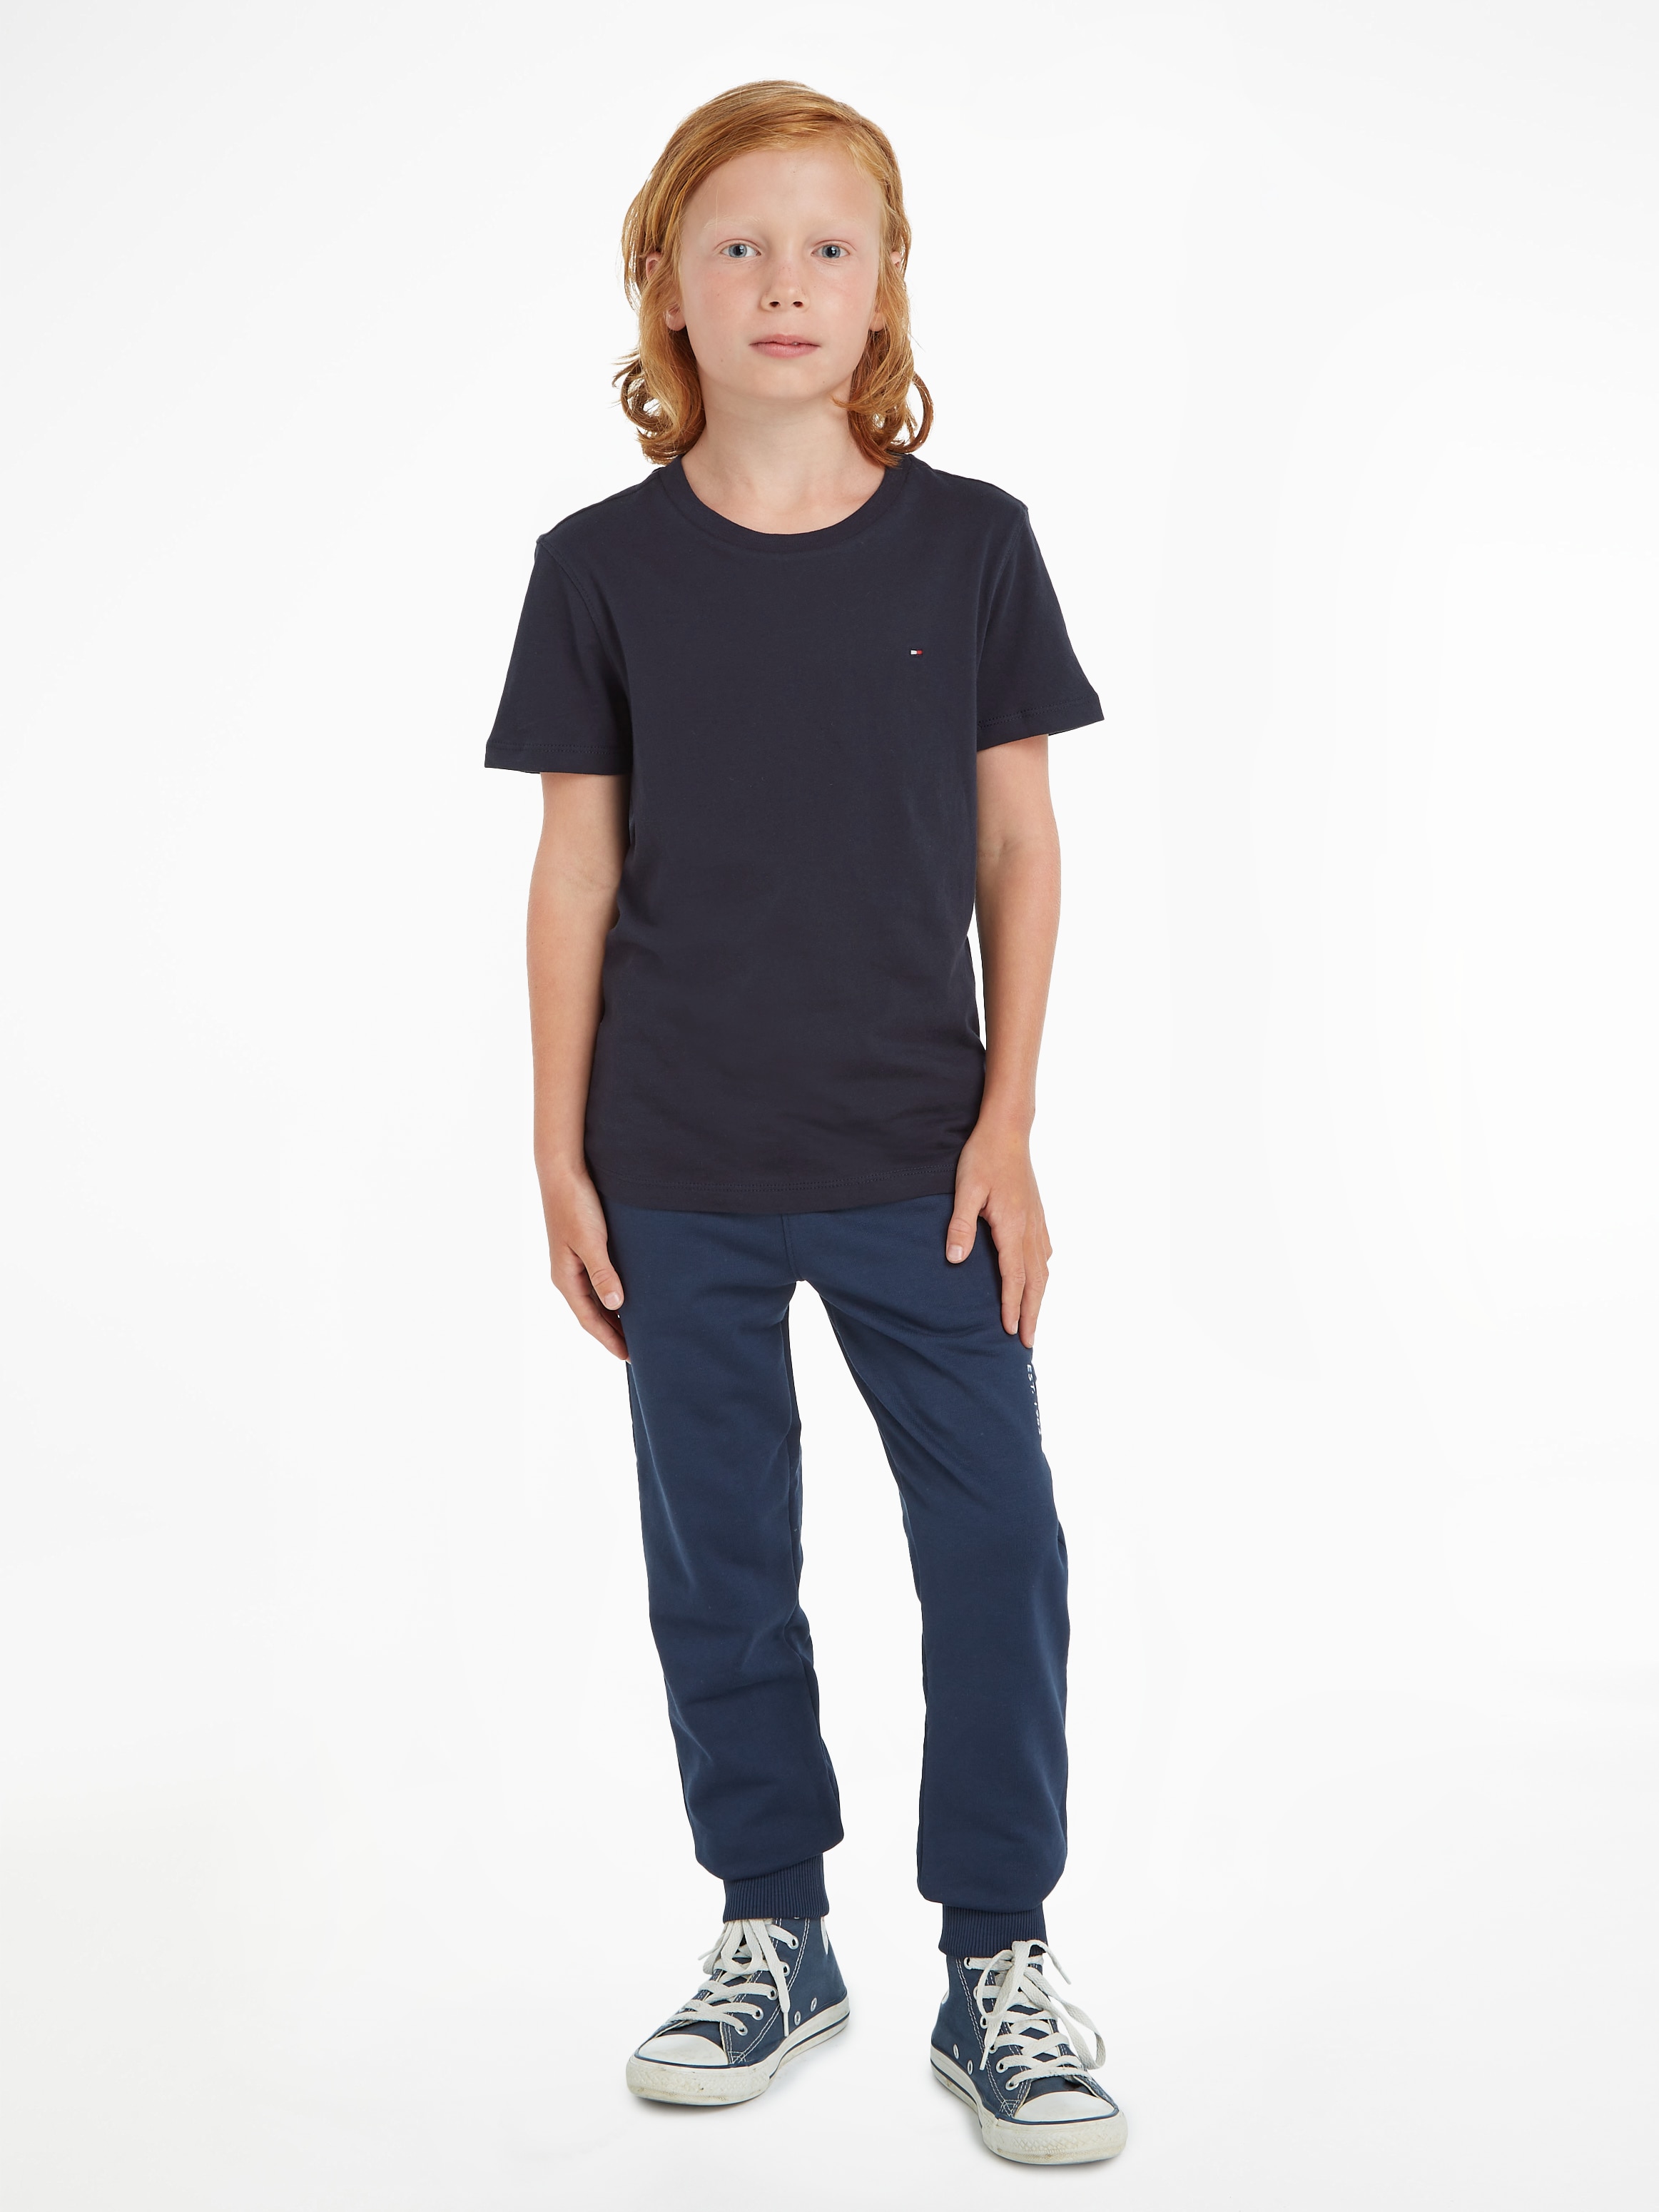 KNIT«, T-Shirt Tommy bei BASIC Junior Kids Kinder MiniMe,für Jungen Hilfiger »BOYS CN